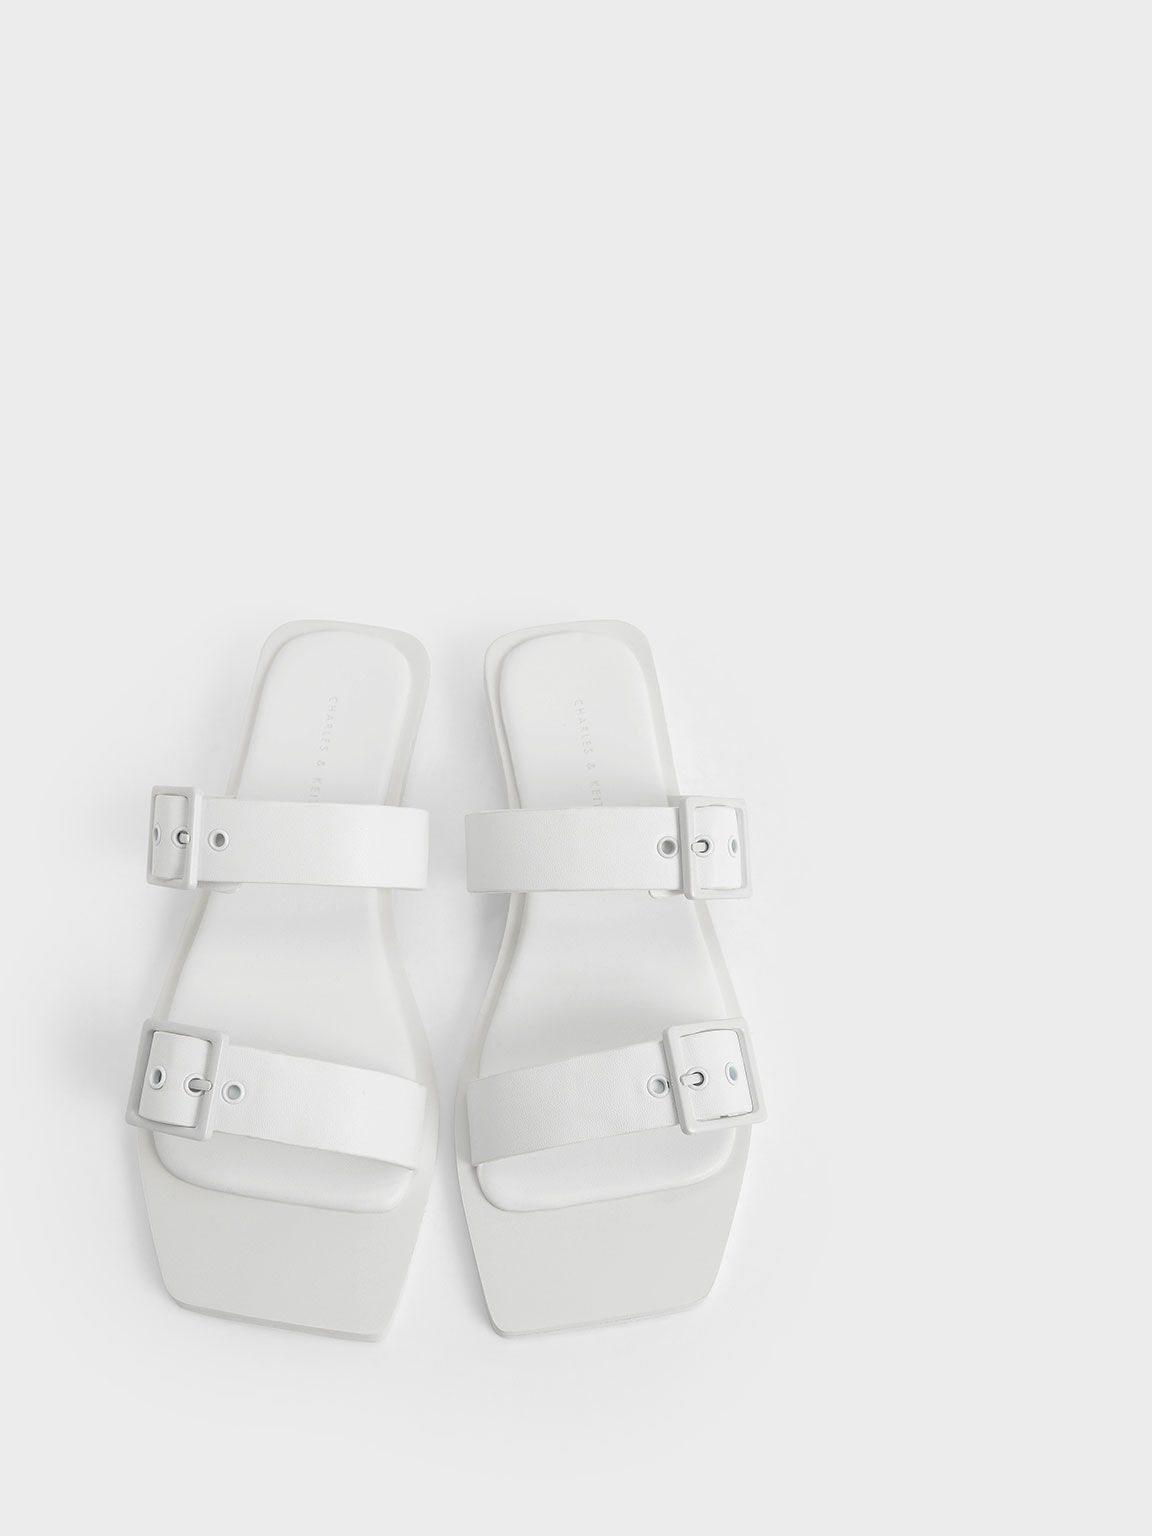 Square Toe Buckled Slide Sandals, White, hi-res